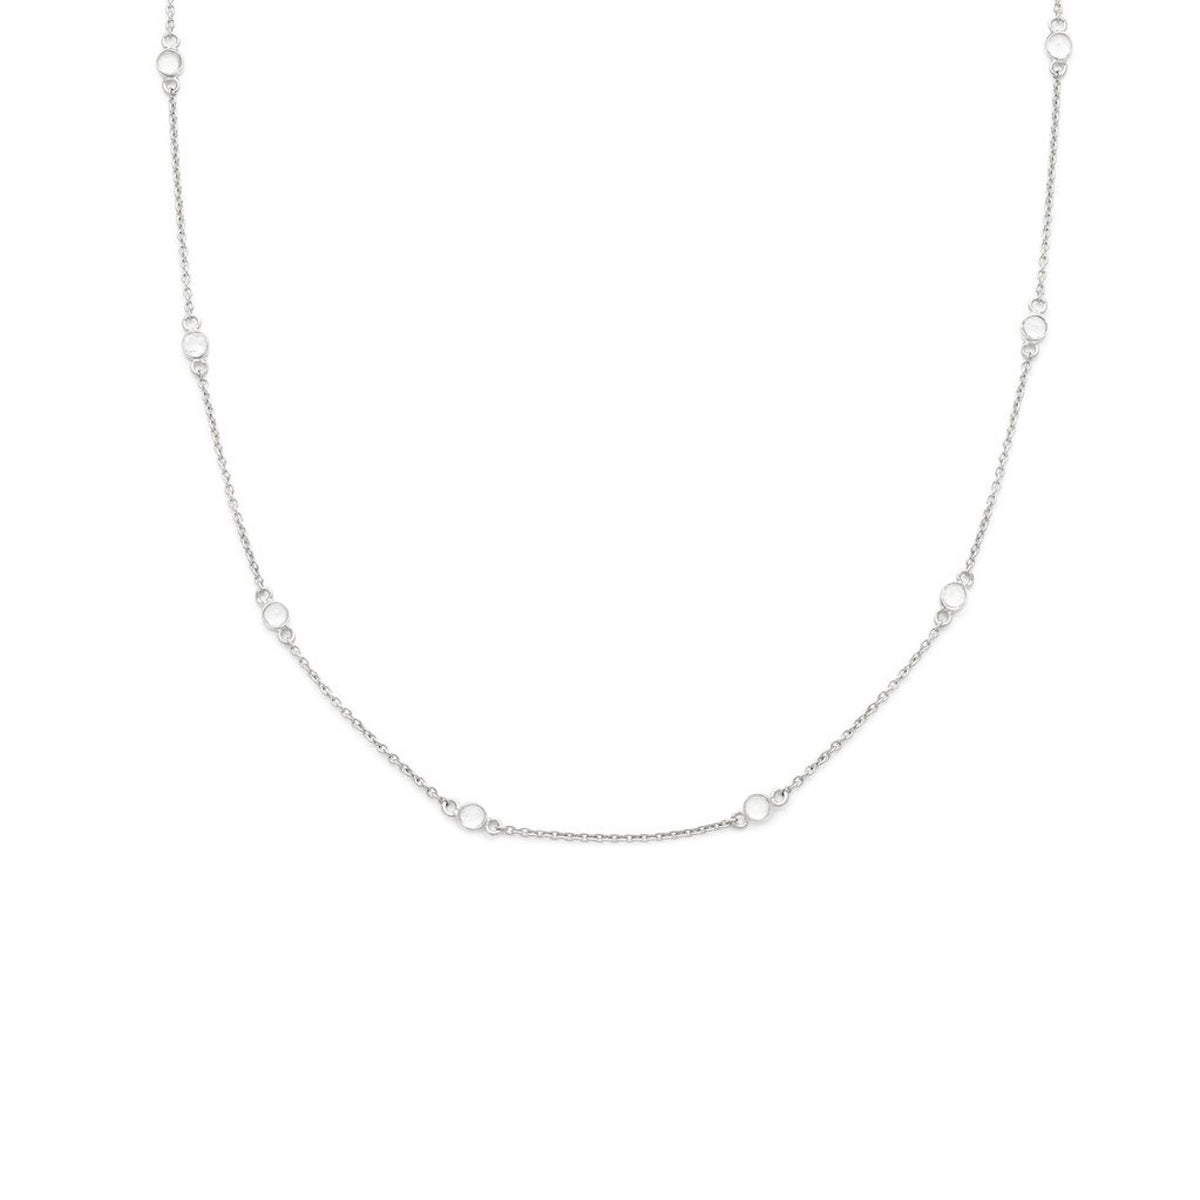 Floatesse Silver Necklace, CZ